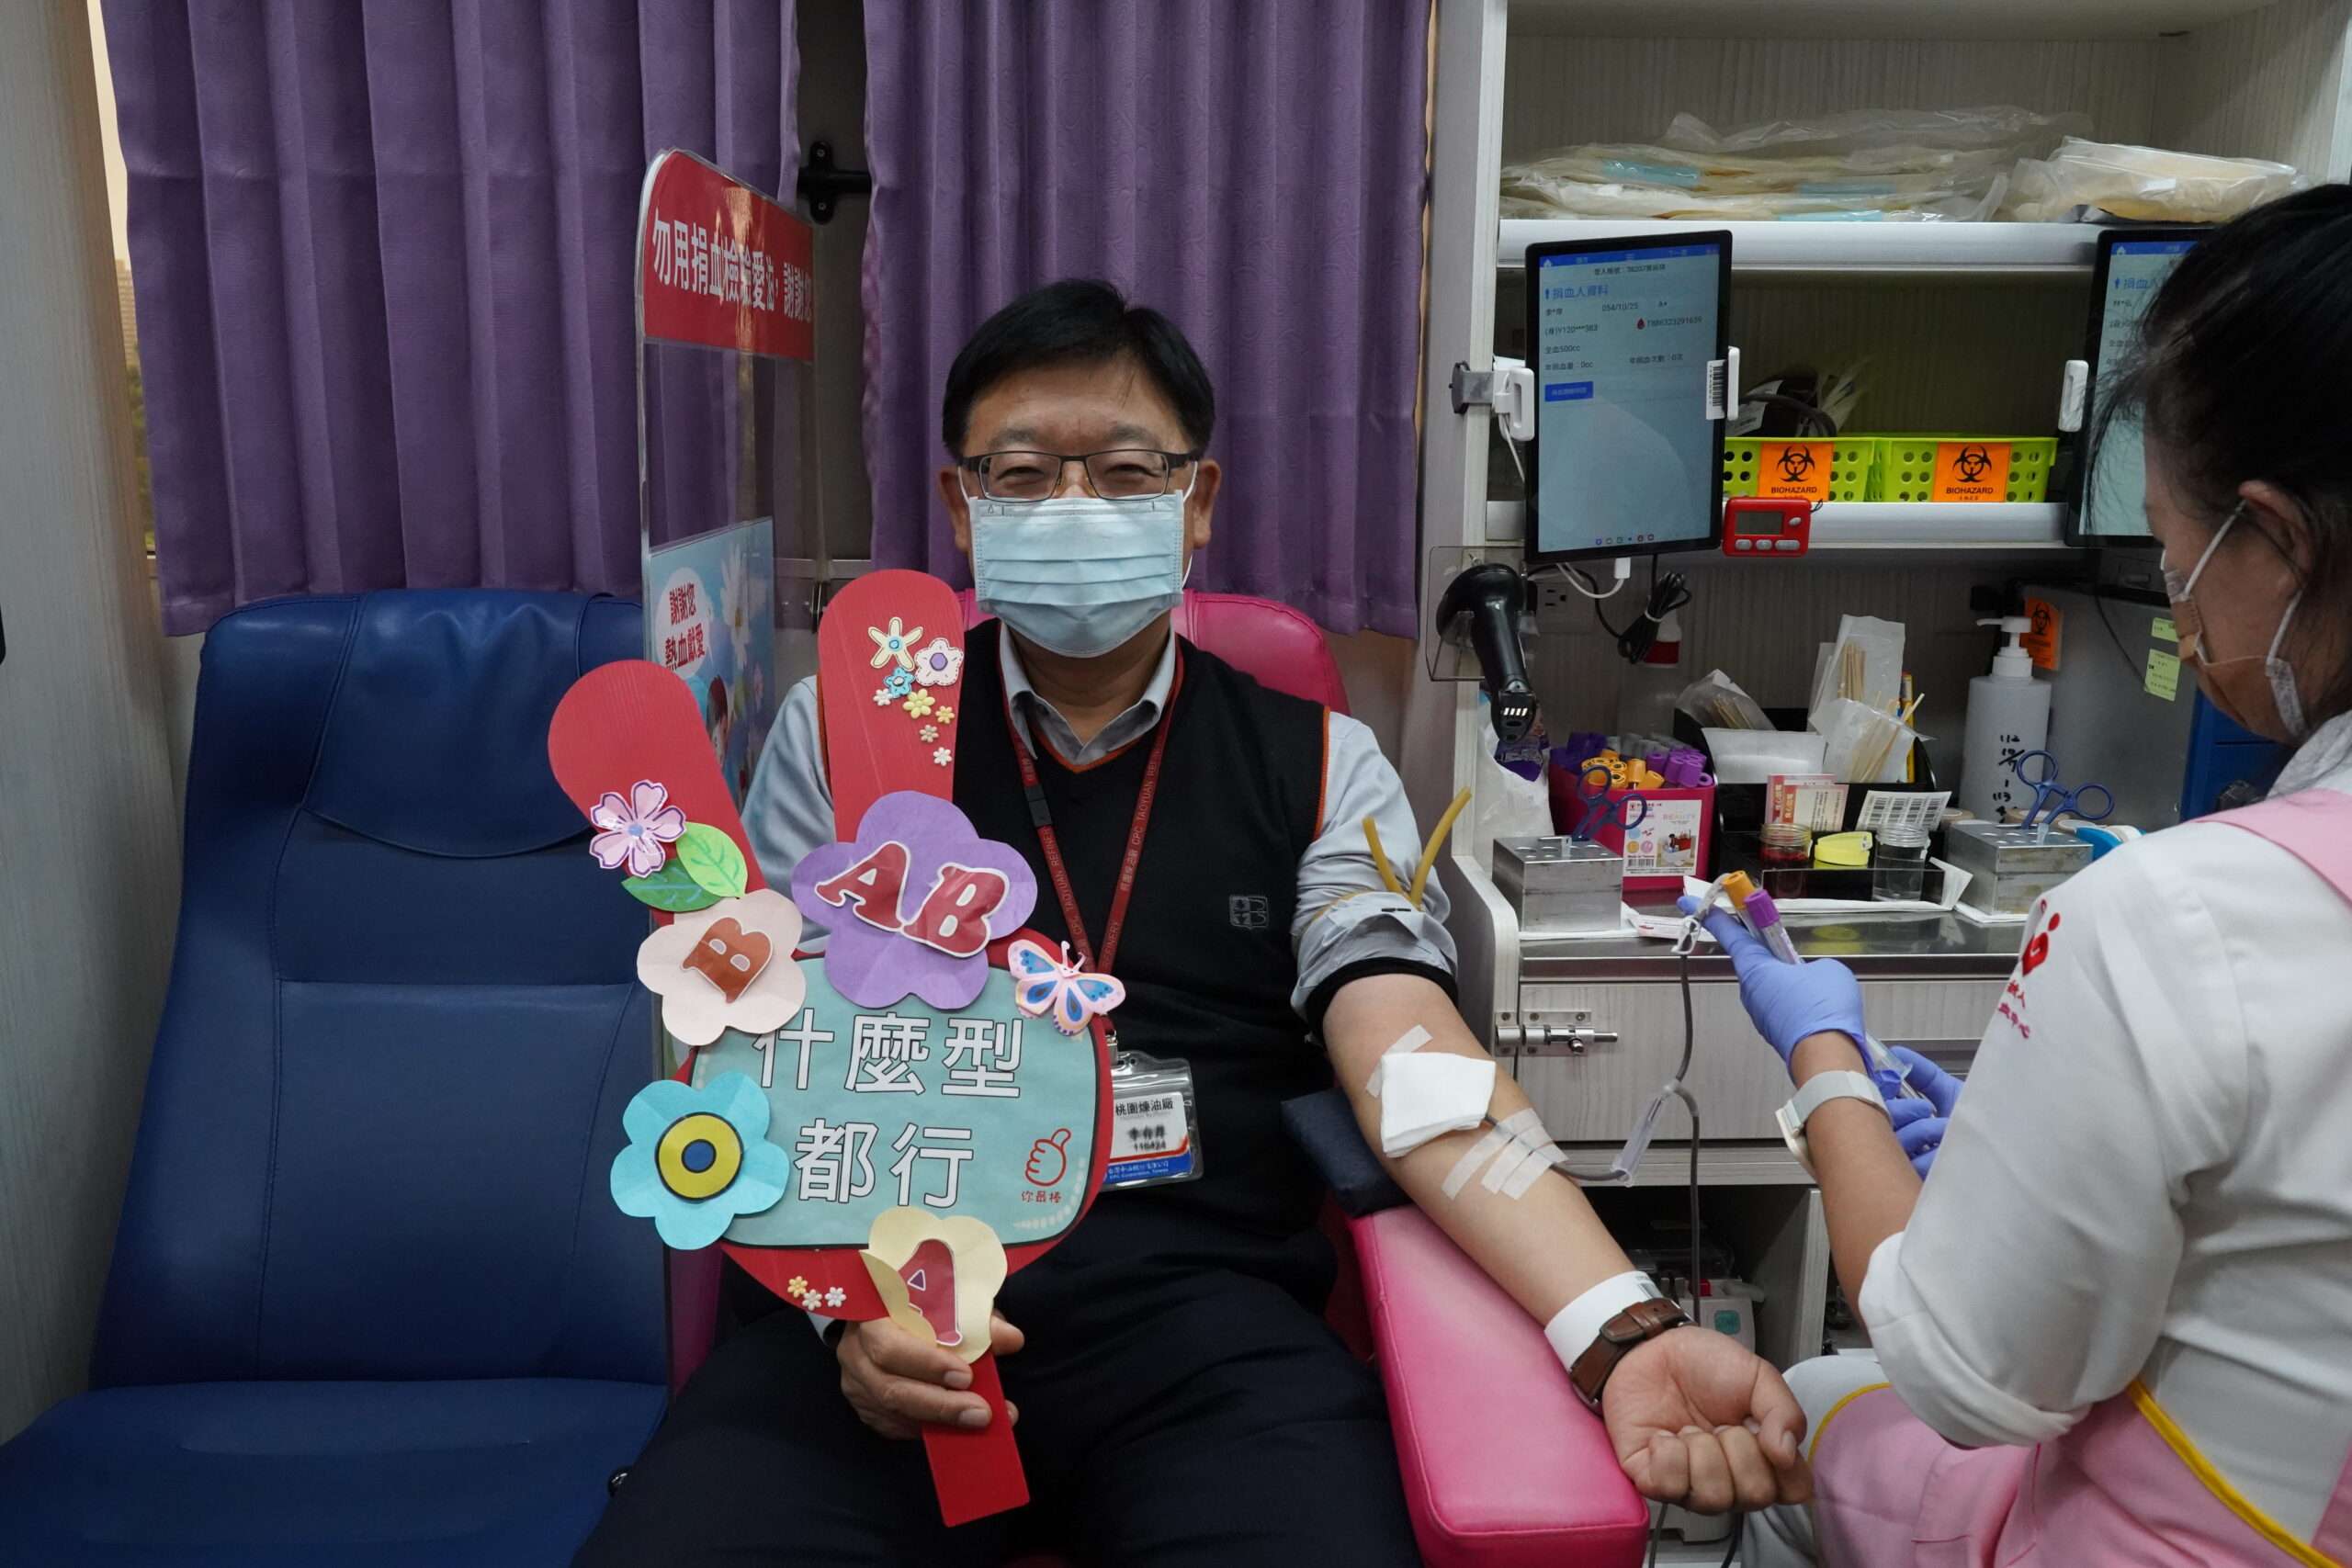 中油桃廠捐好捐滿 捐血量再創新高 - 早安台灣新聞 | Morning Taiwan News